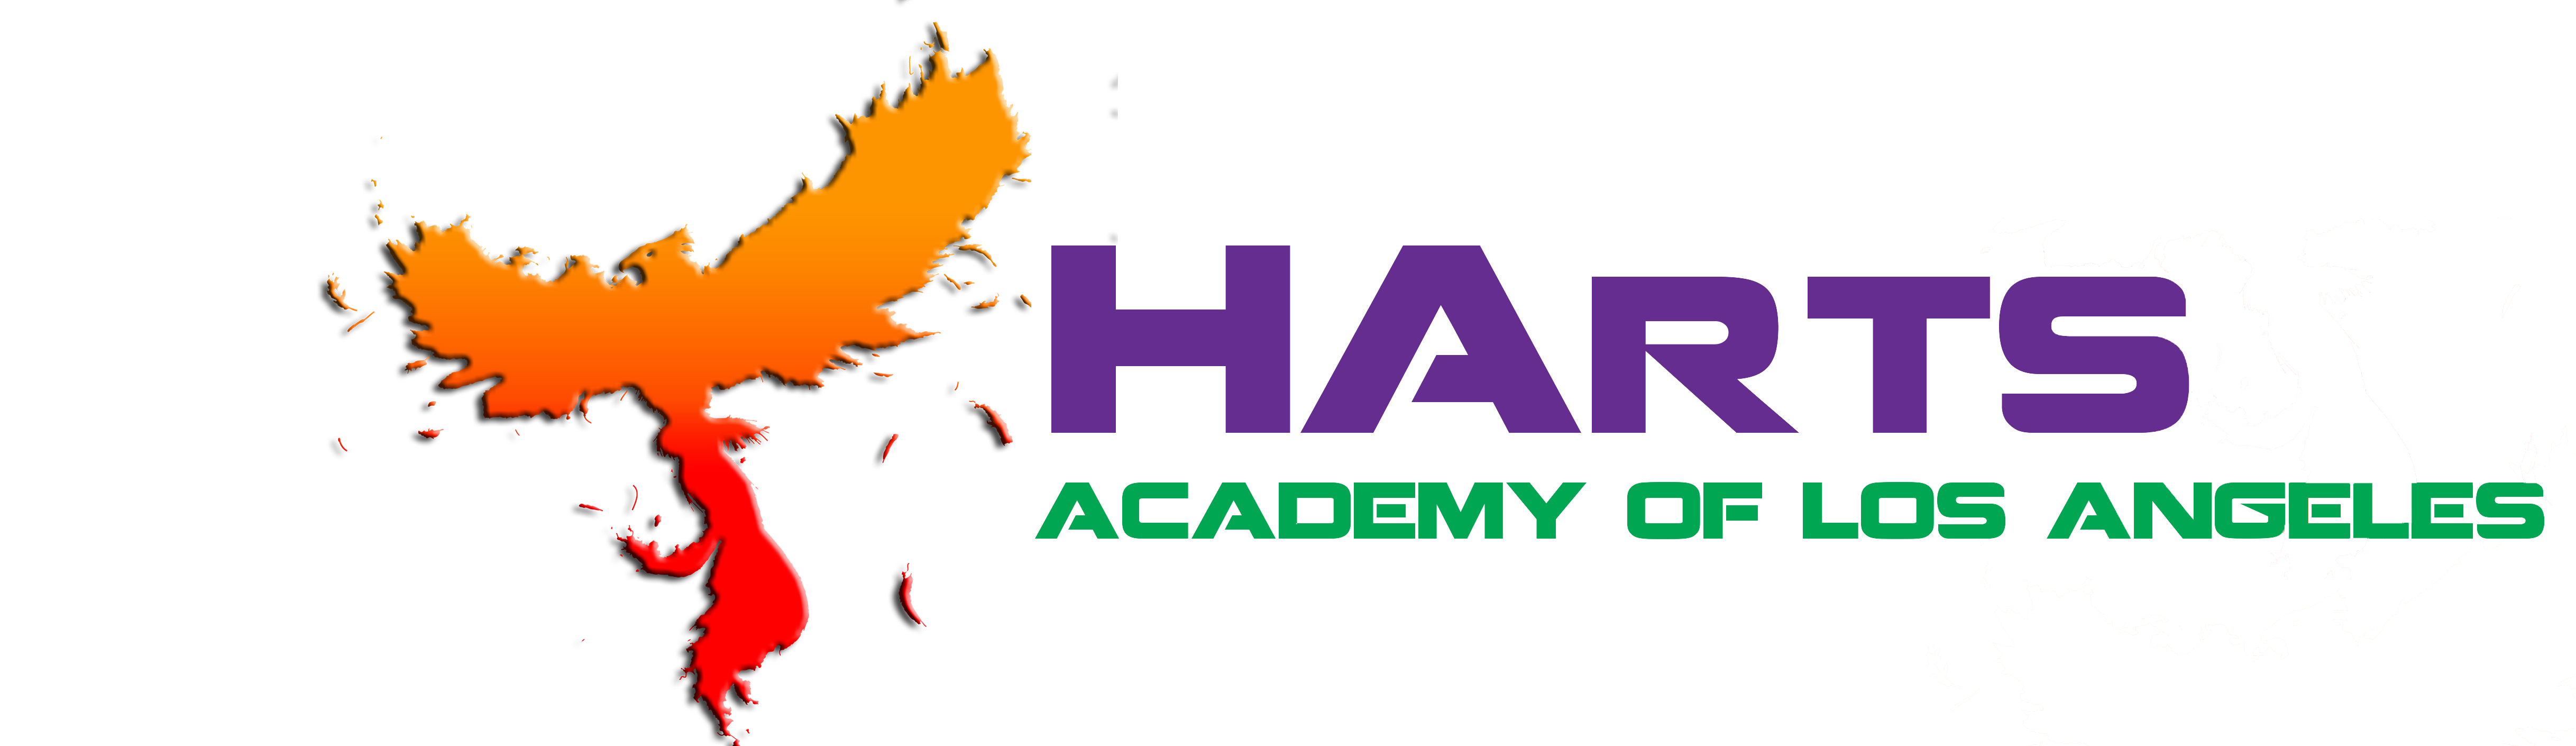 Harts Academy of Los Angeles logo